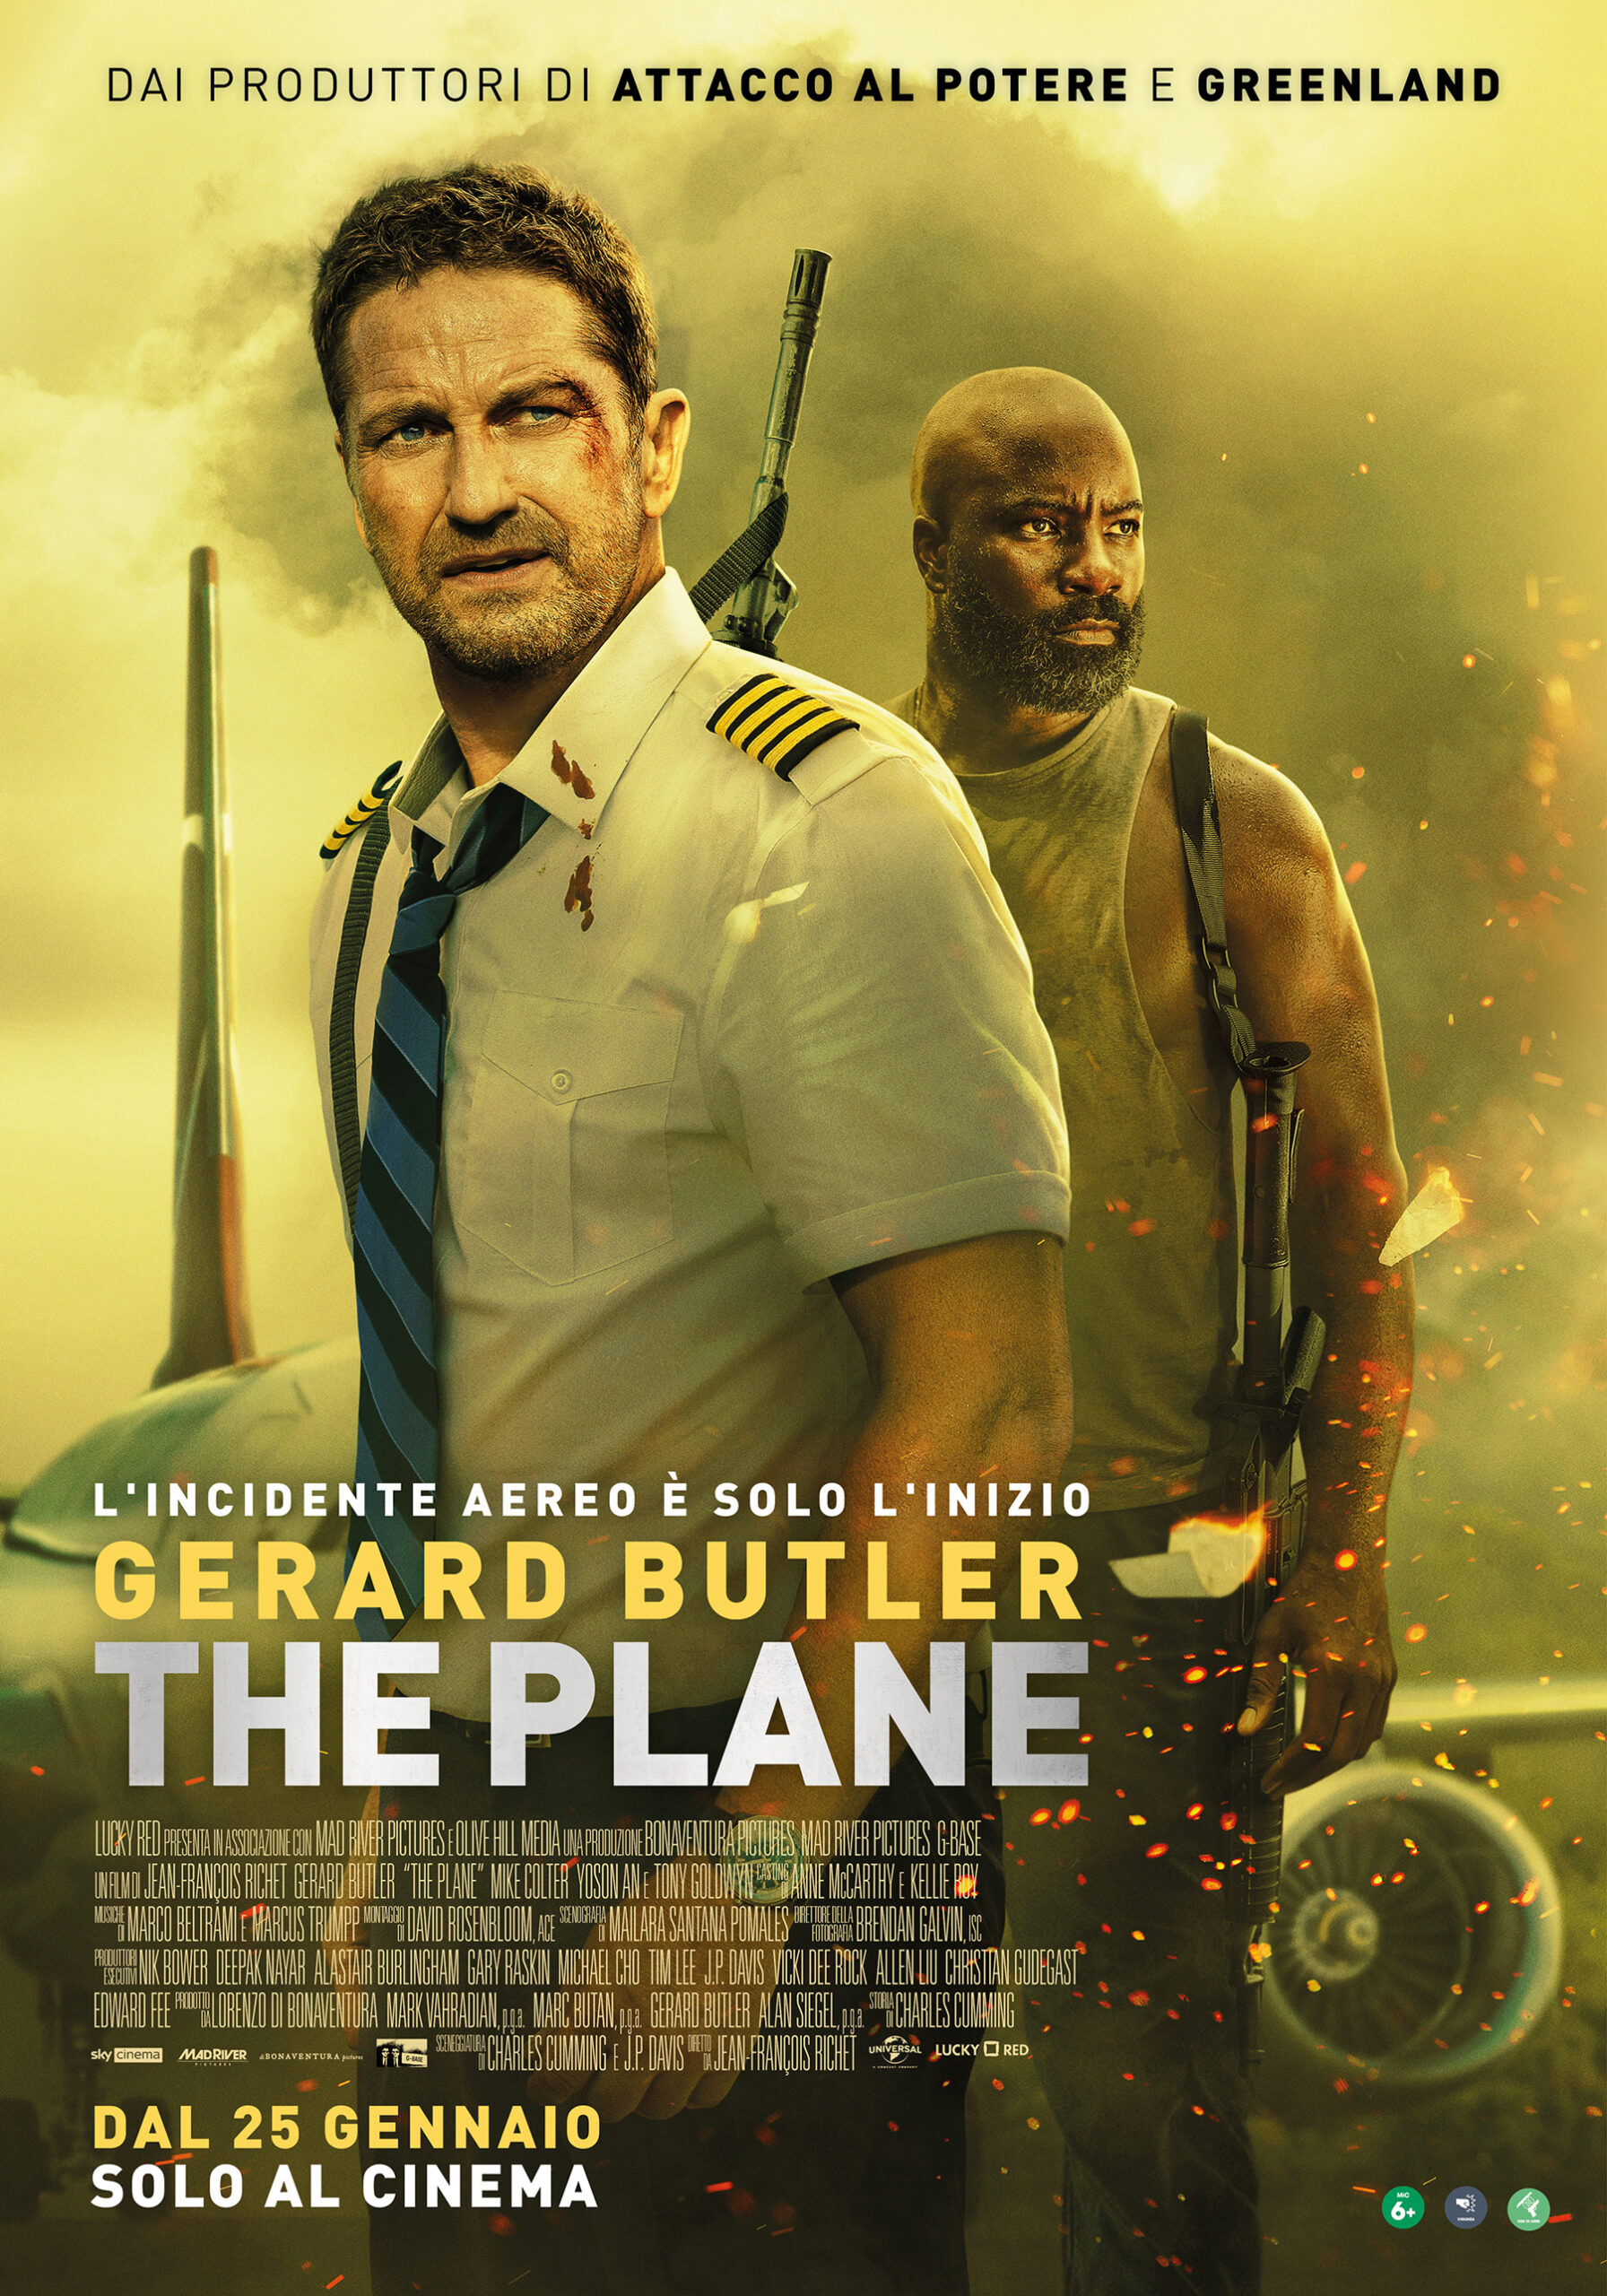 Il poster dell'action movie The Plane, per la regia di Jean-François Richet